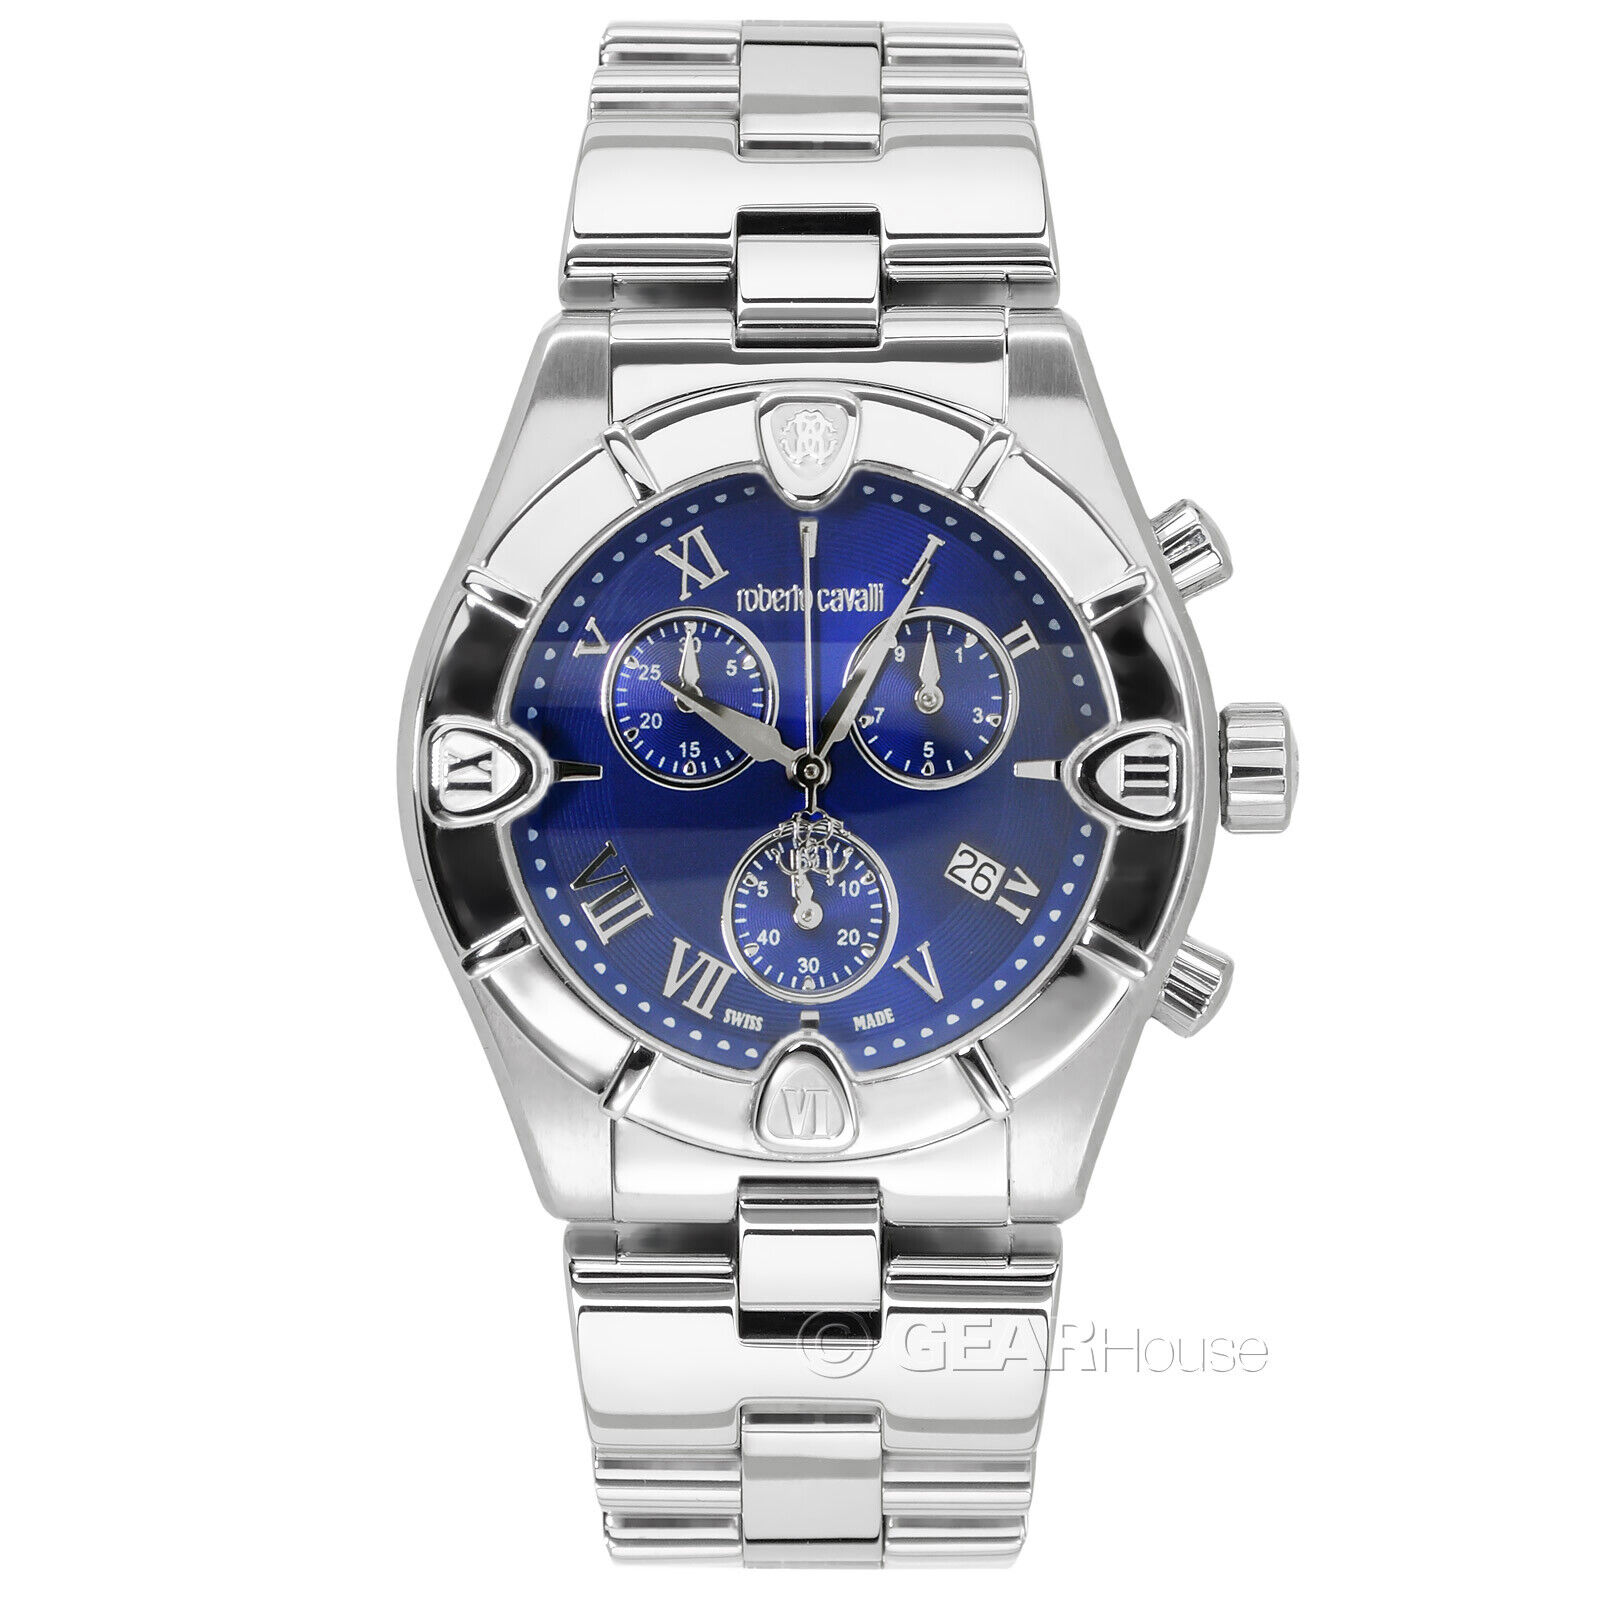 Мужские часы Roberto Cavalli Diamond Time Swiss Made с хронографом с синим серебряным циферблатом